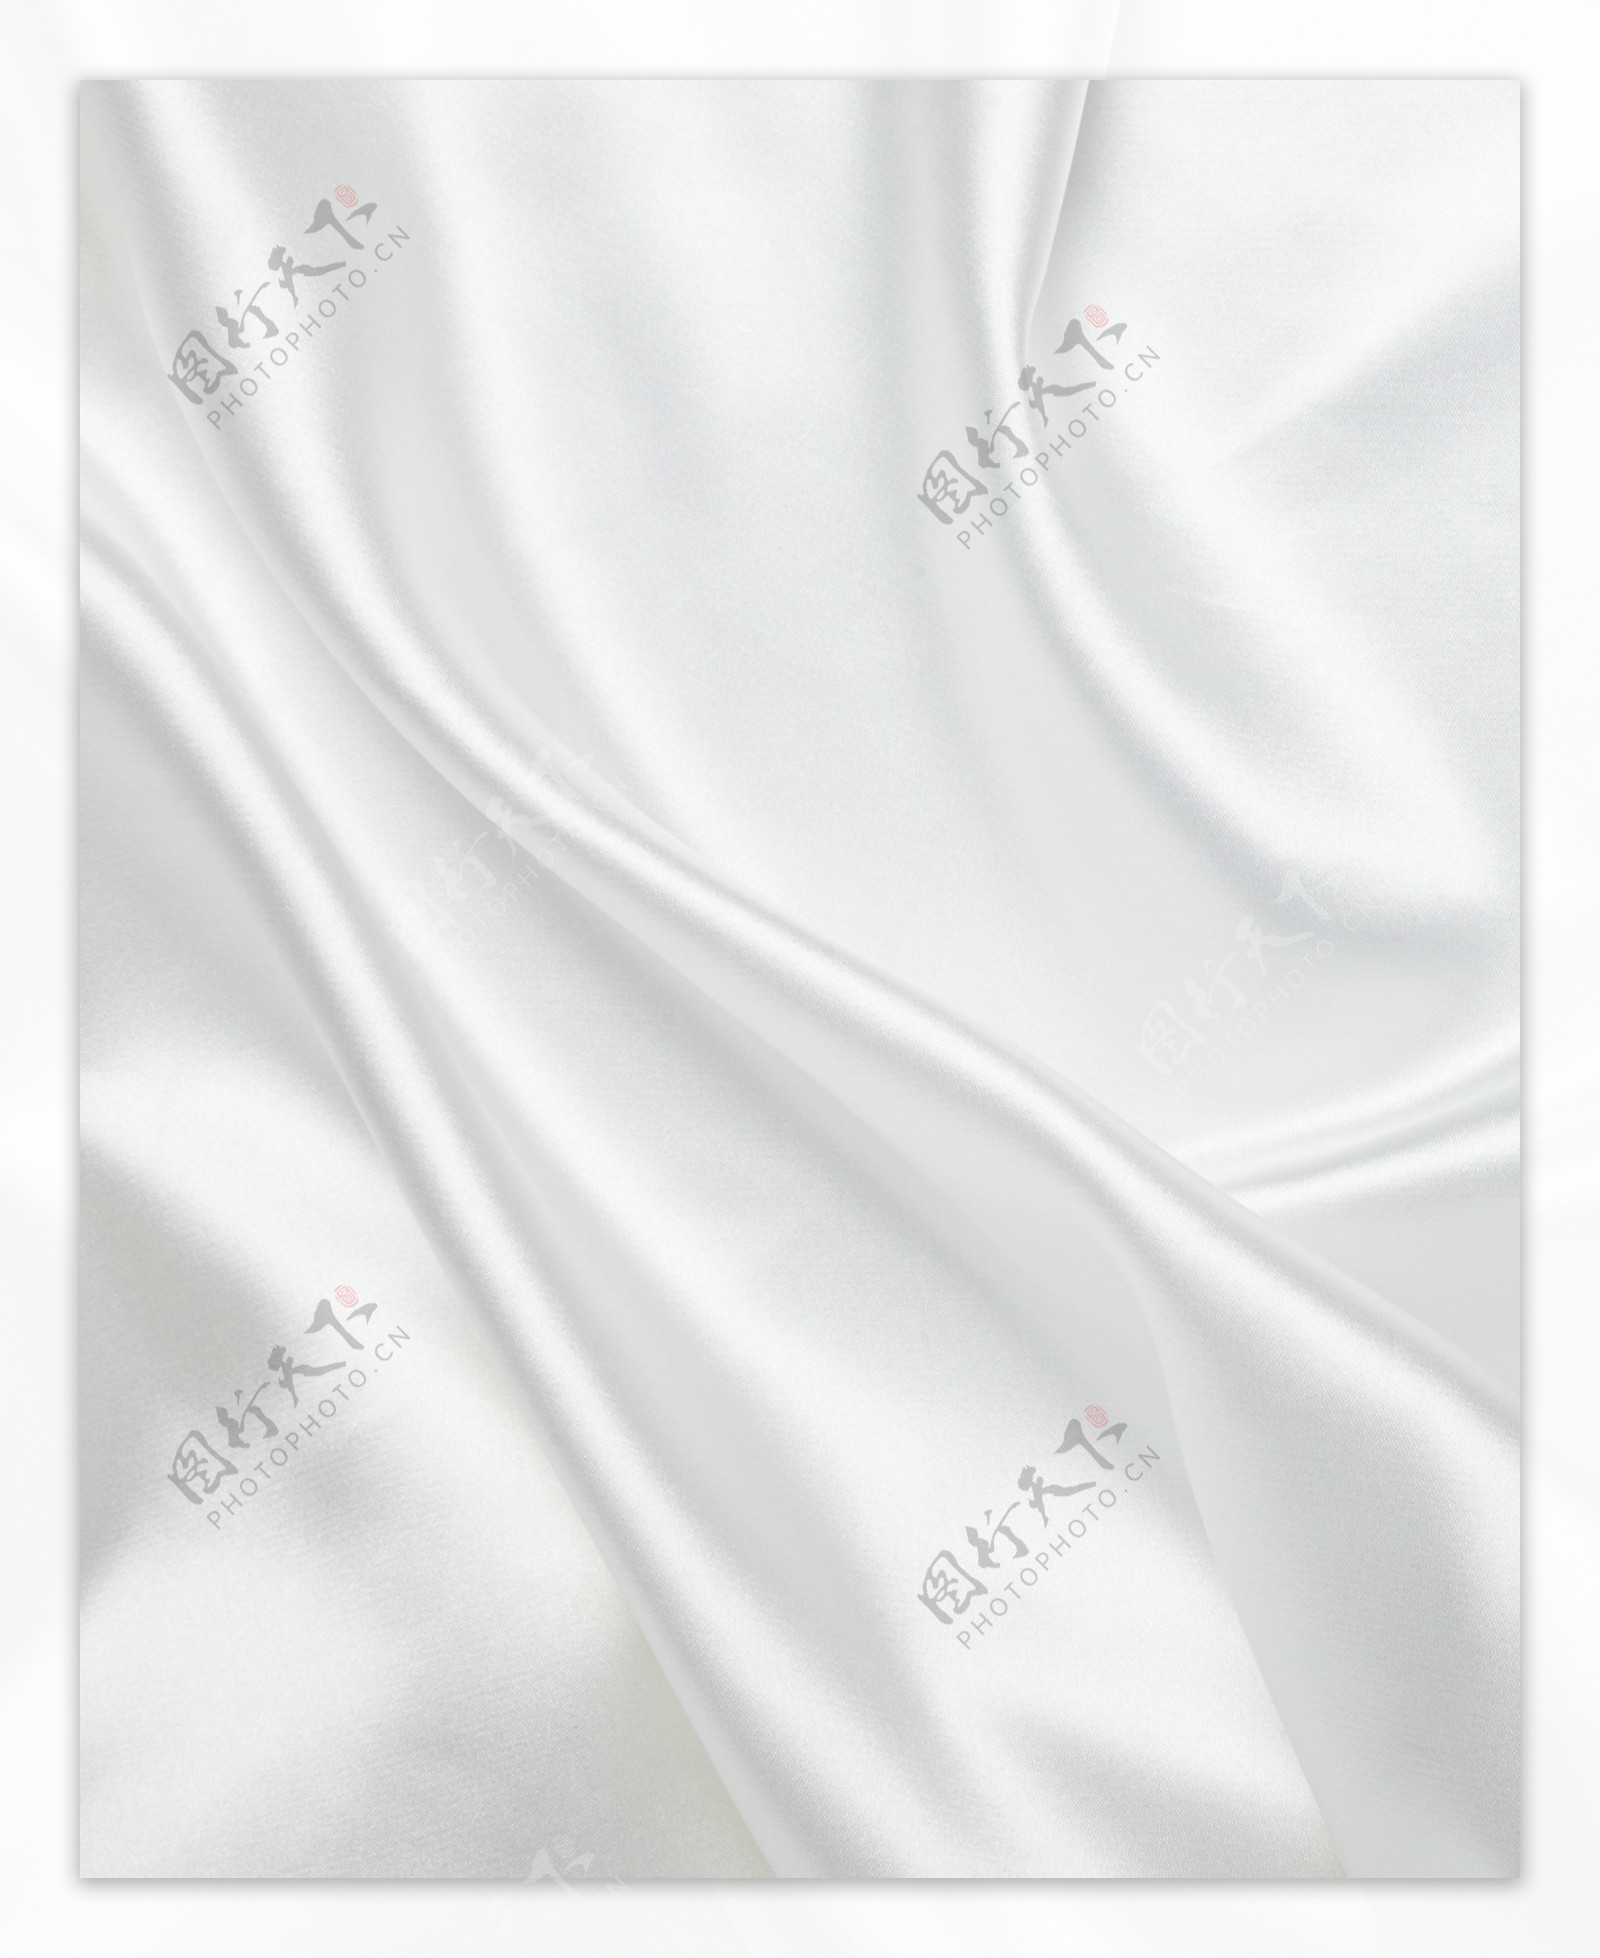 白色绸缎面料